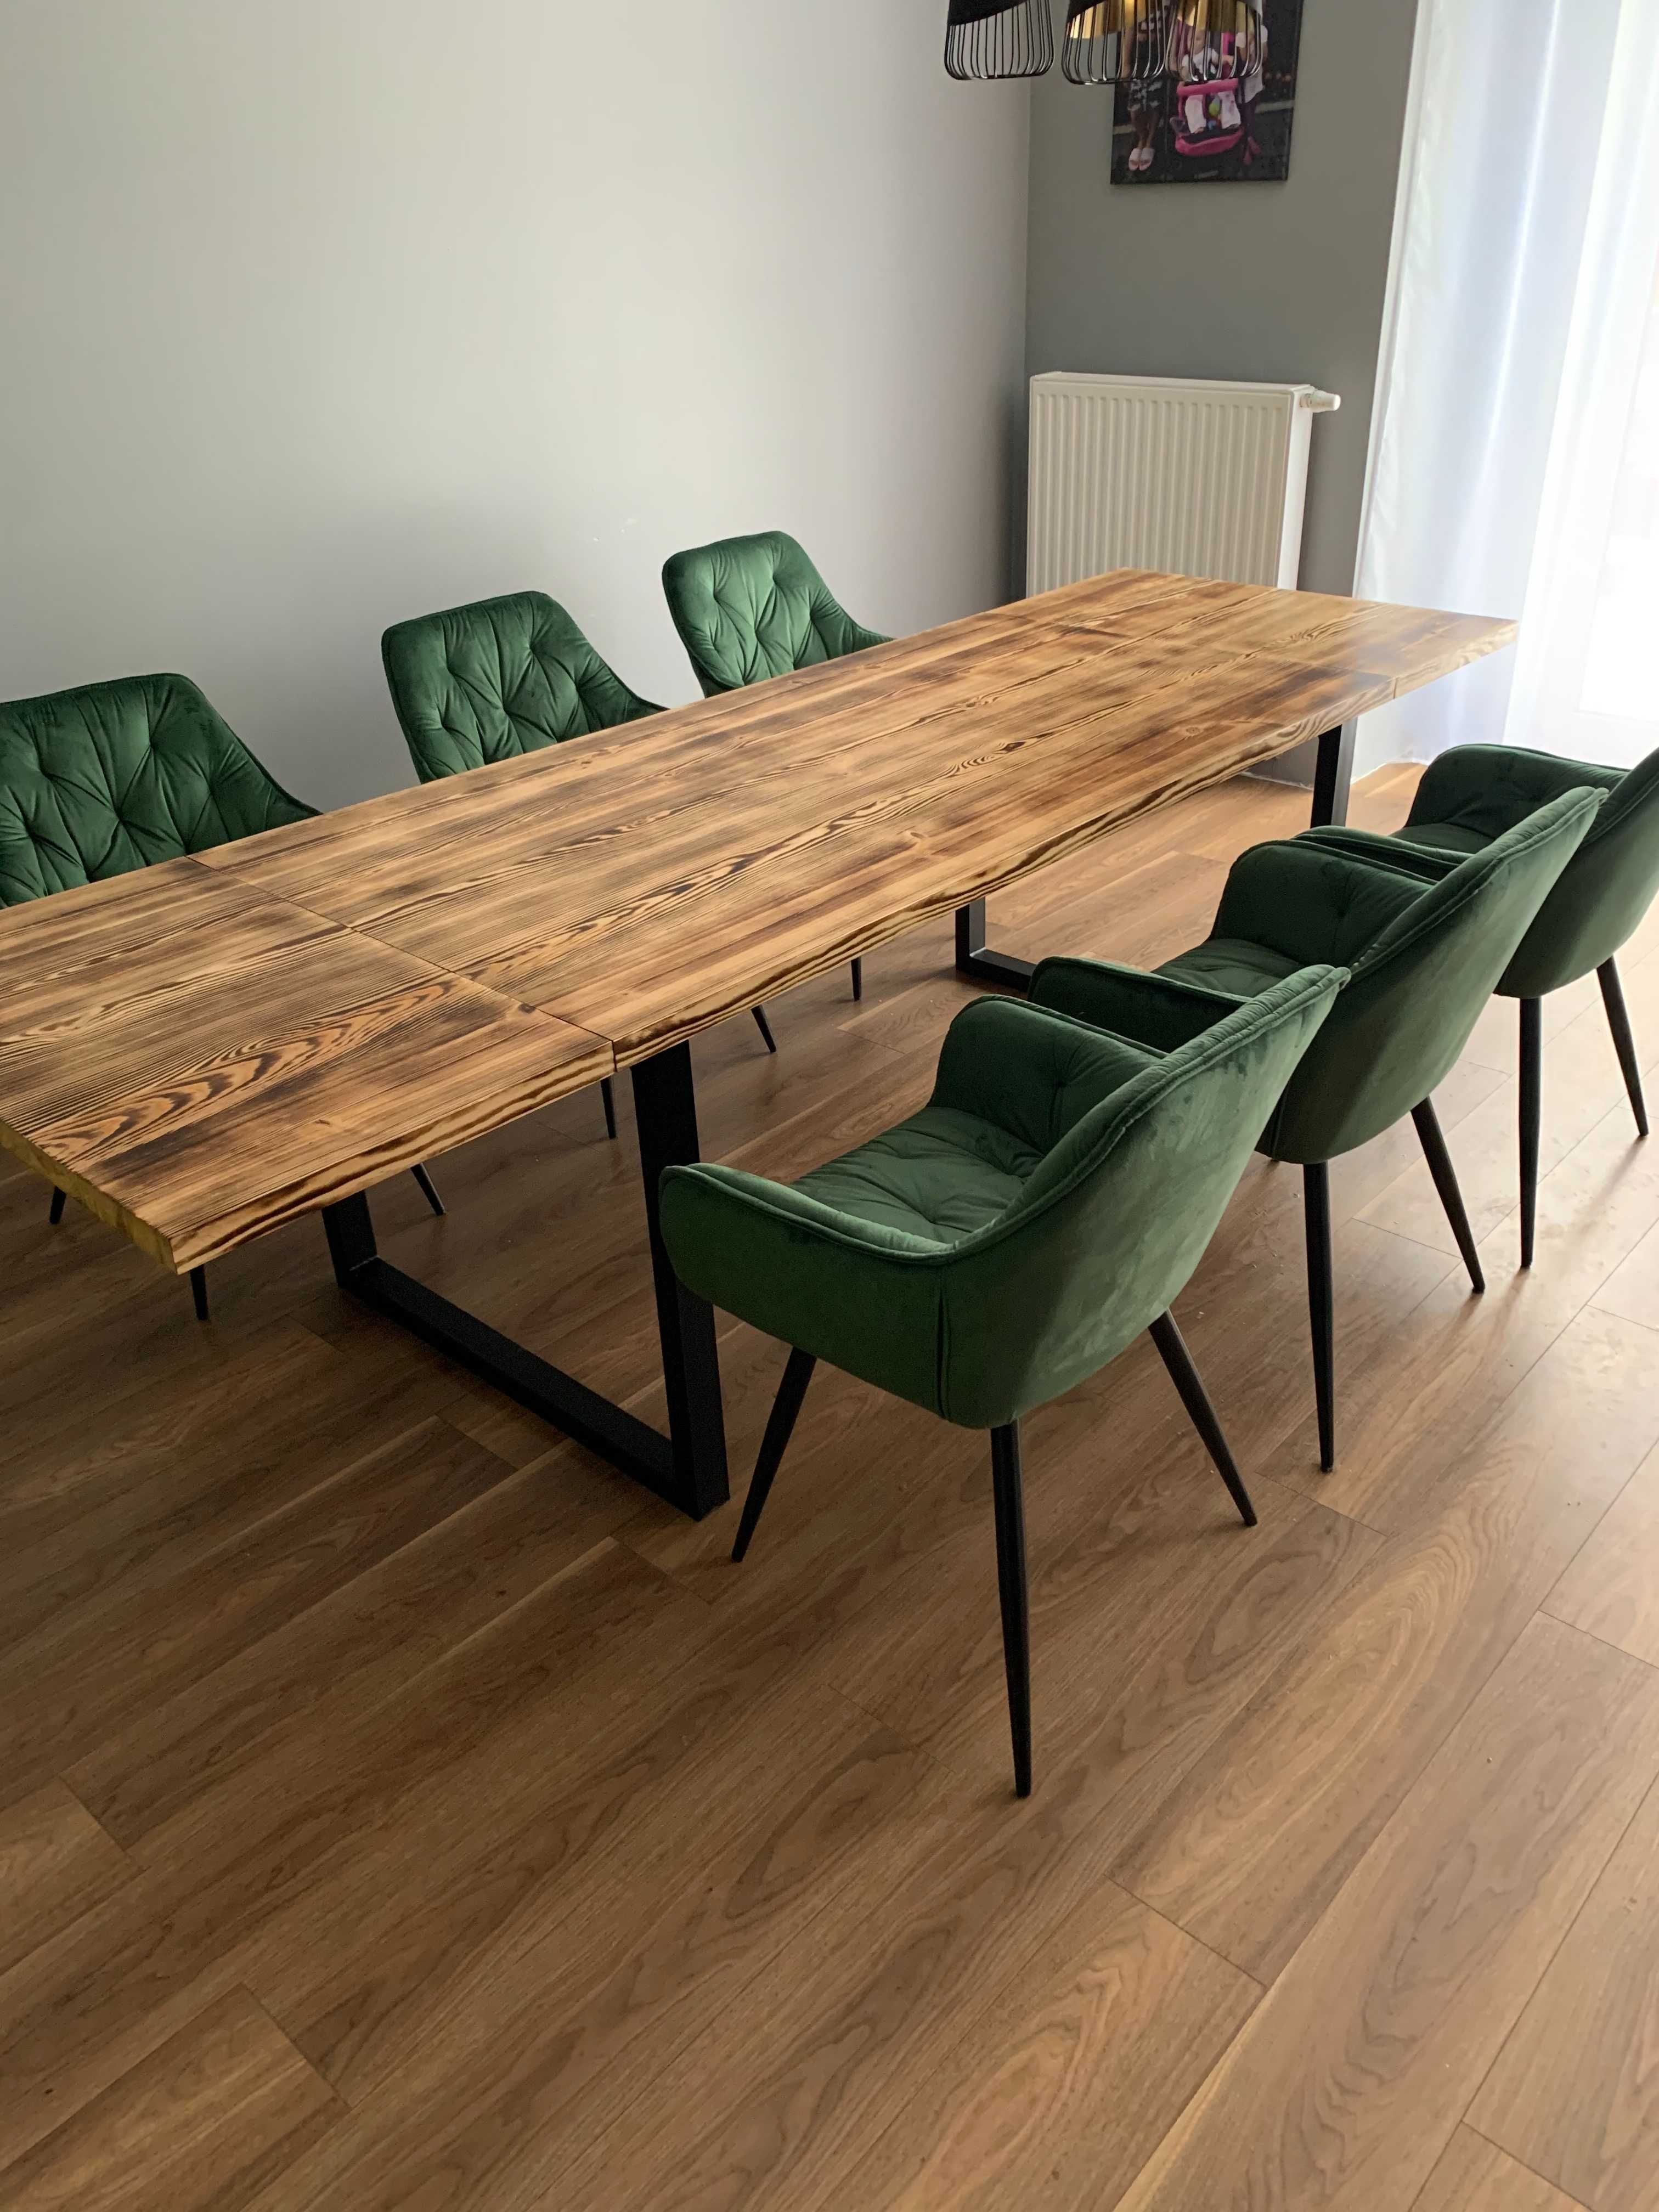 Stół sosnowy 120x80 cm: Wyjątkowa jakość drewna i trwałe metalowe nogi